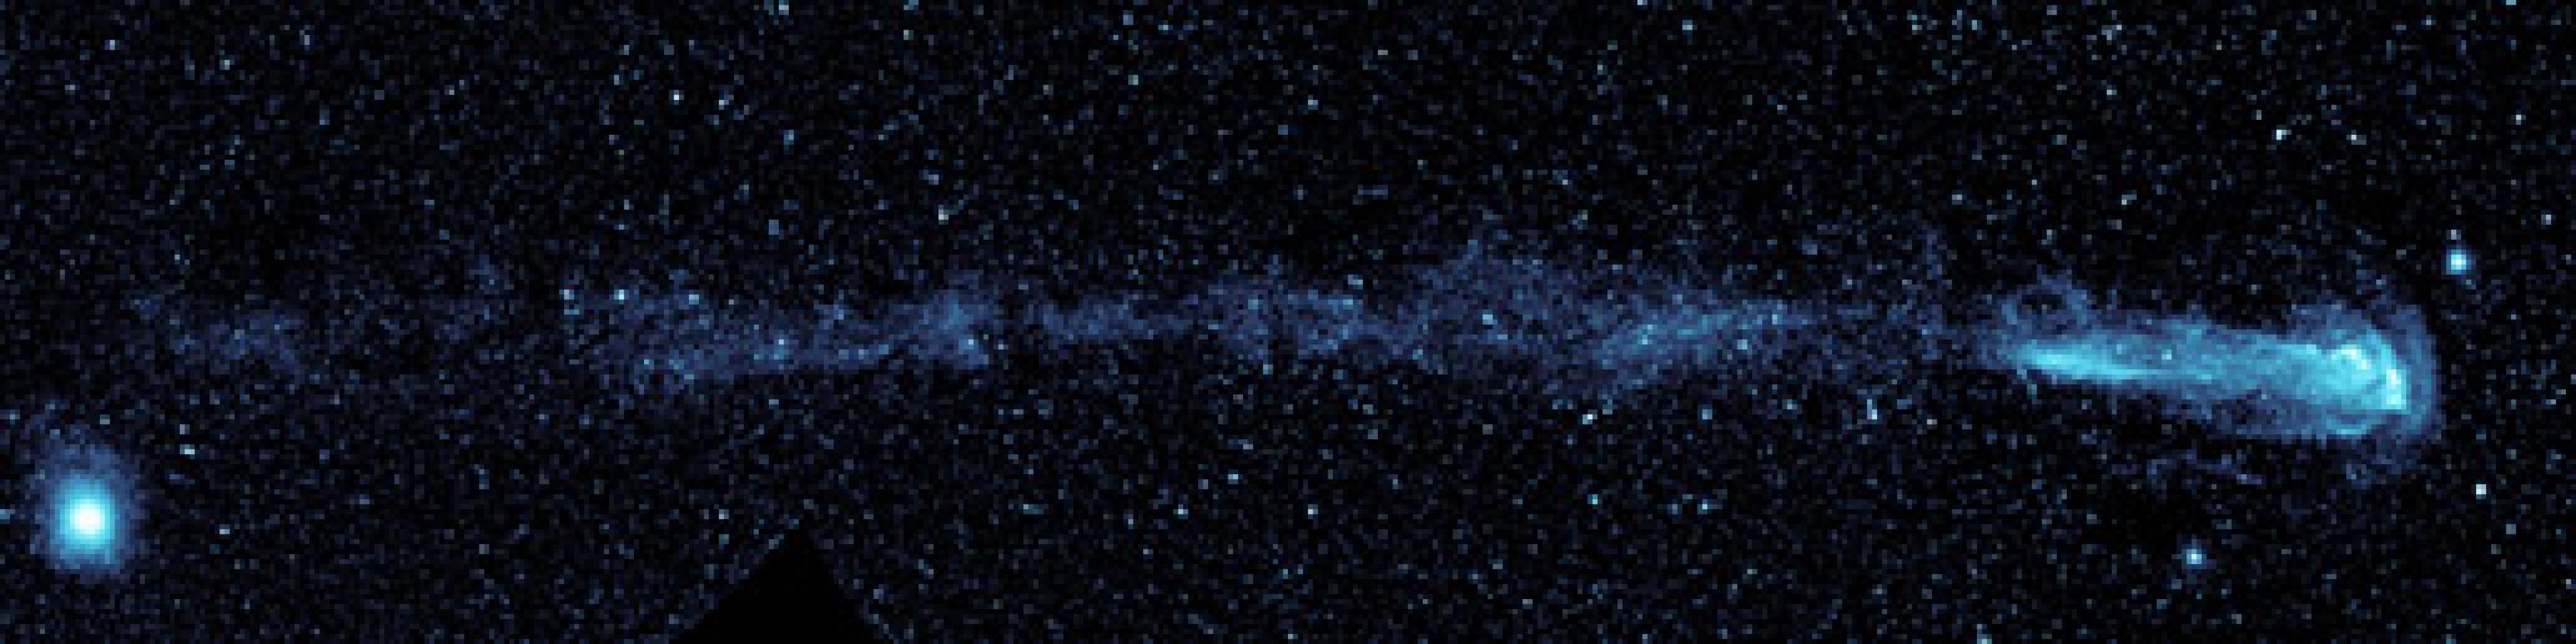 Vom Stern Mira rechts im Bild zieht sich abgestoßenes Material wie ein Schweif nach links.